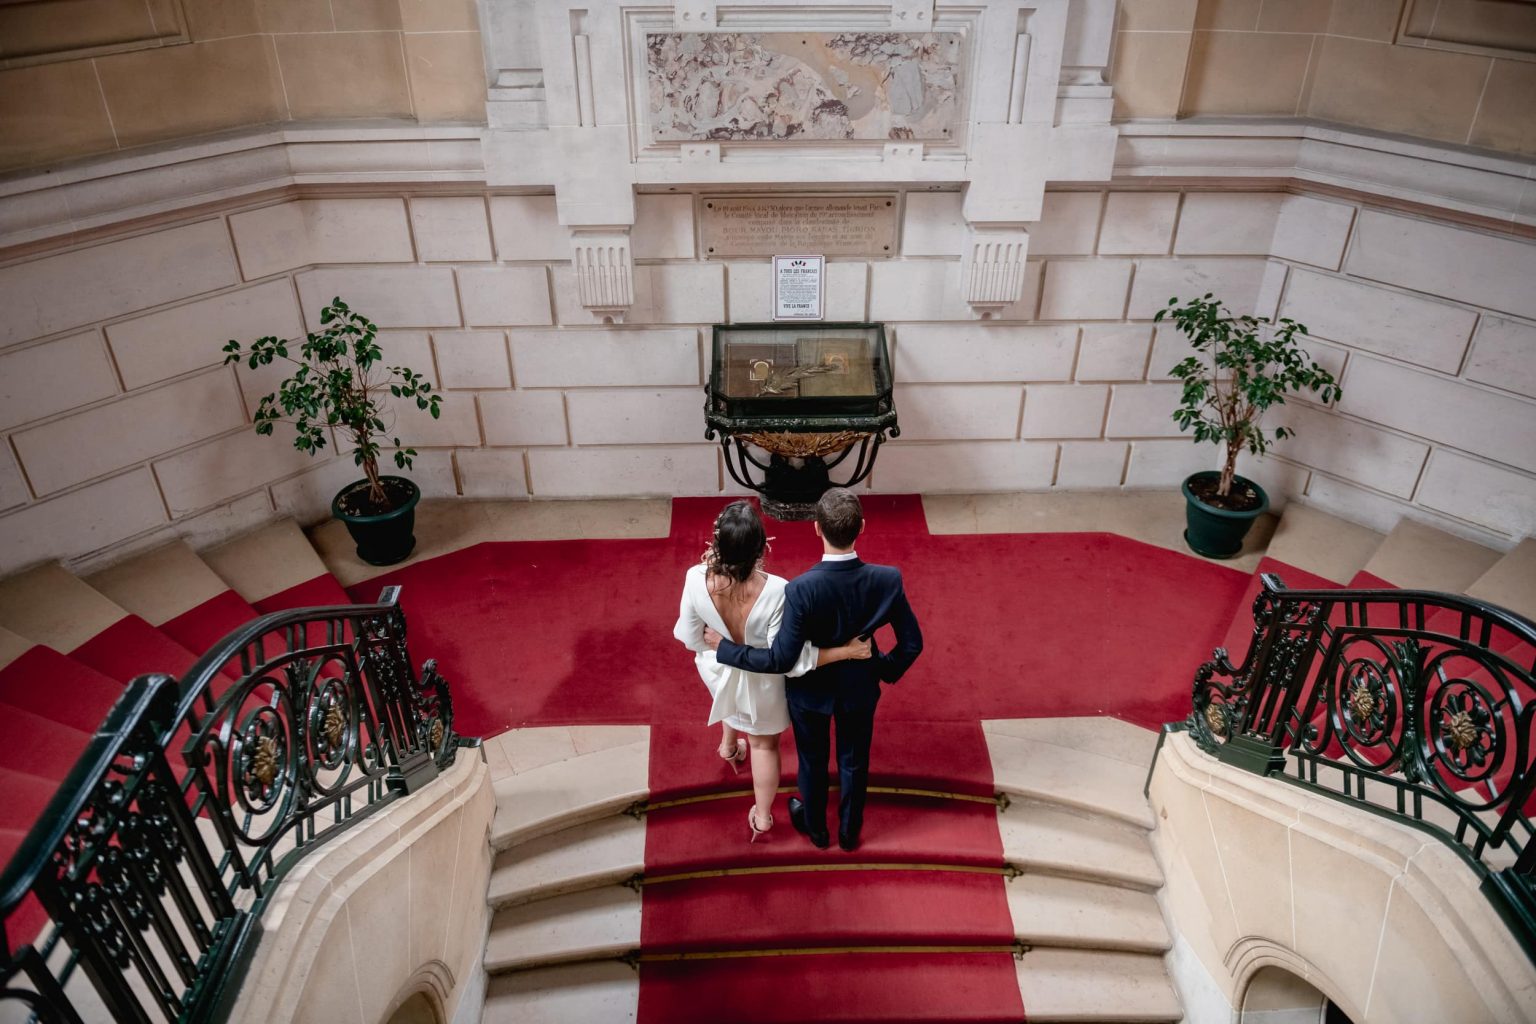 Photographe de mariage mairie 75019 paris